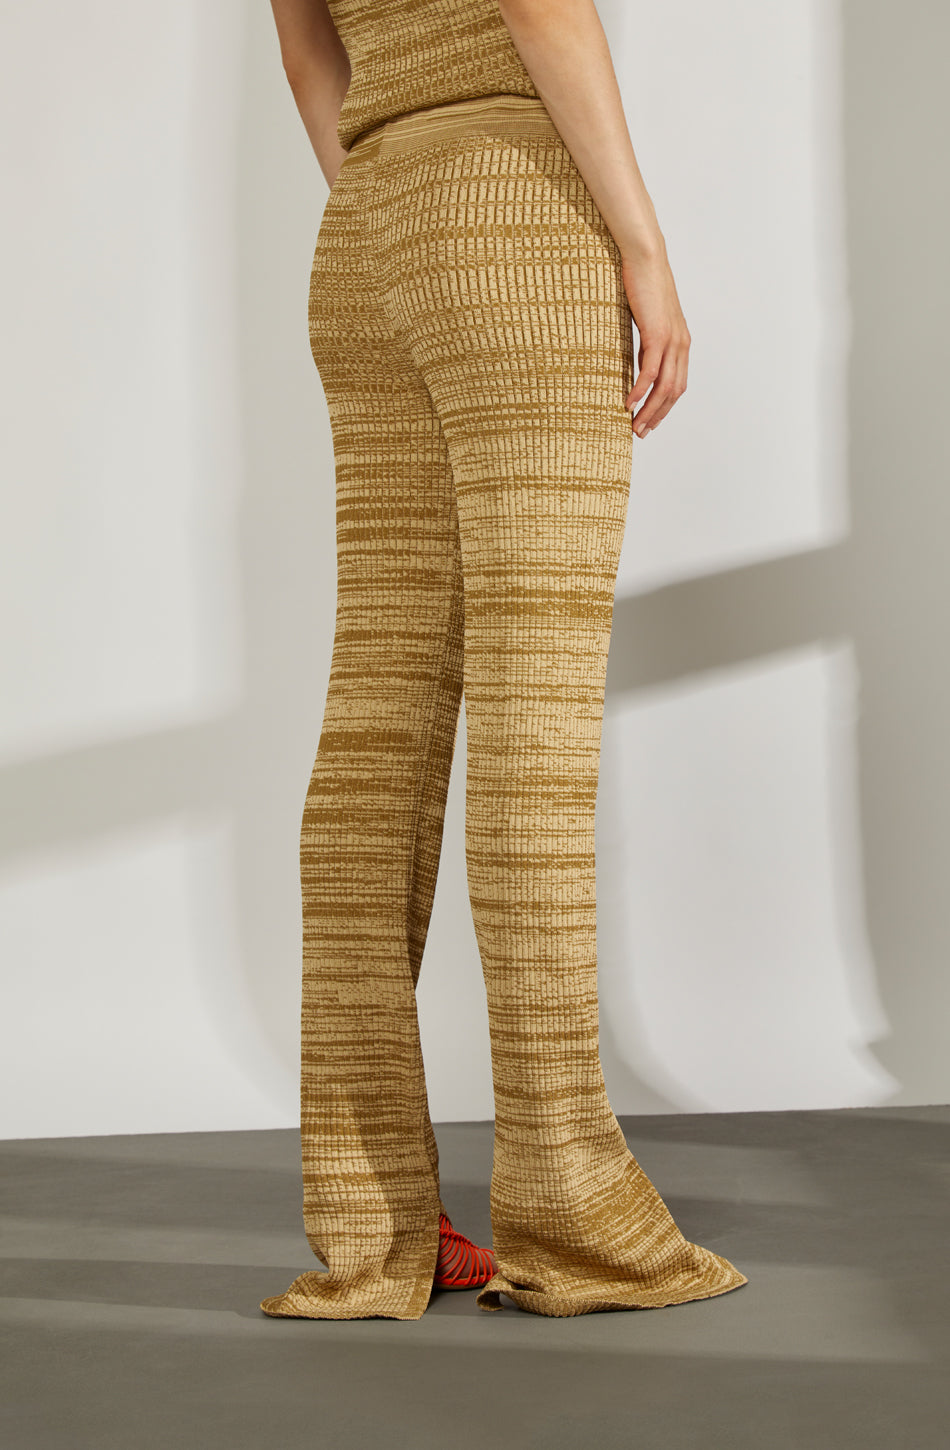 (a)melania bronze-desert leggings